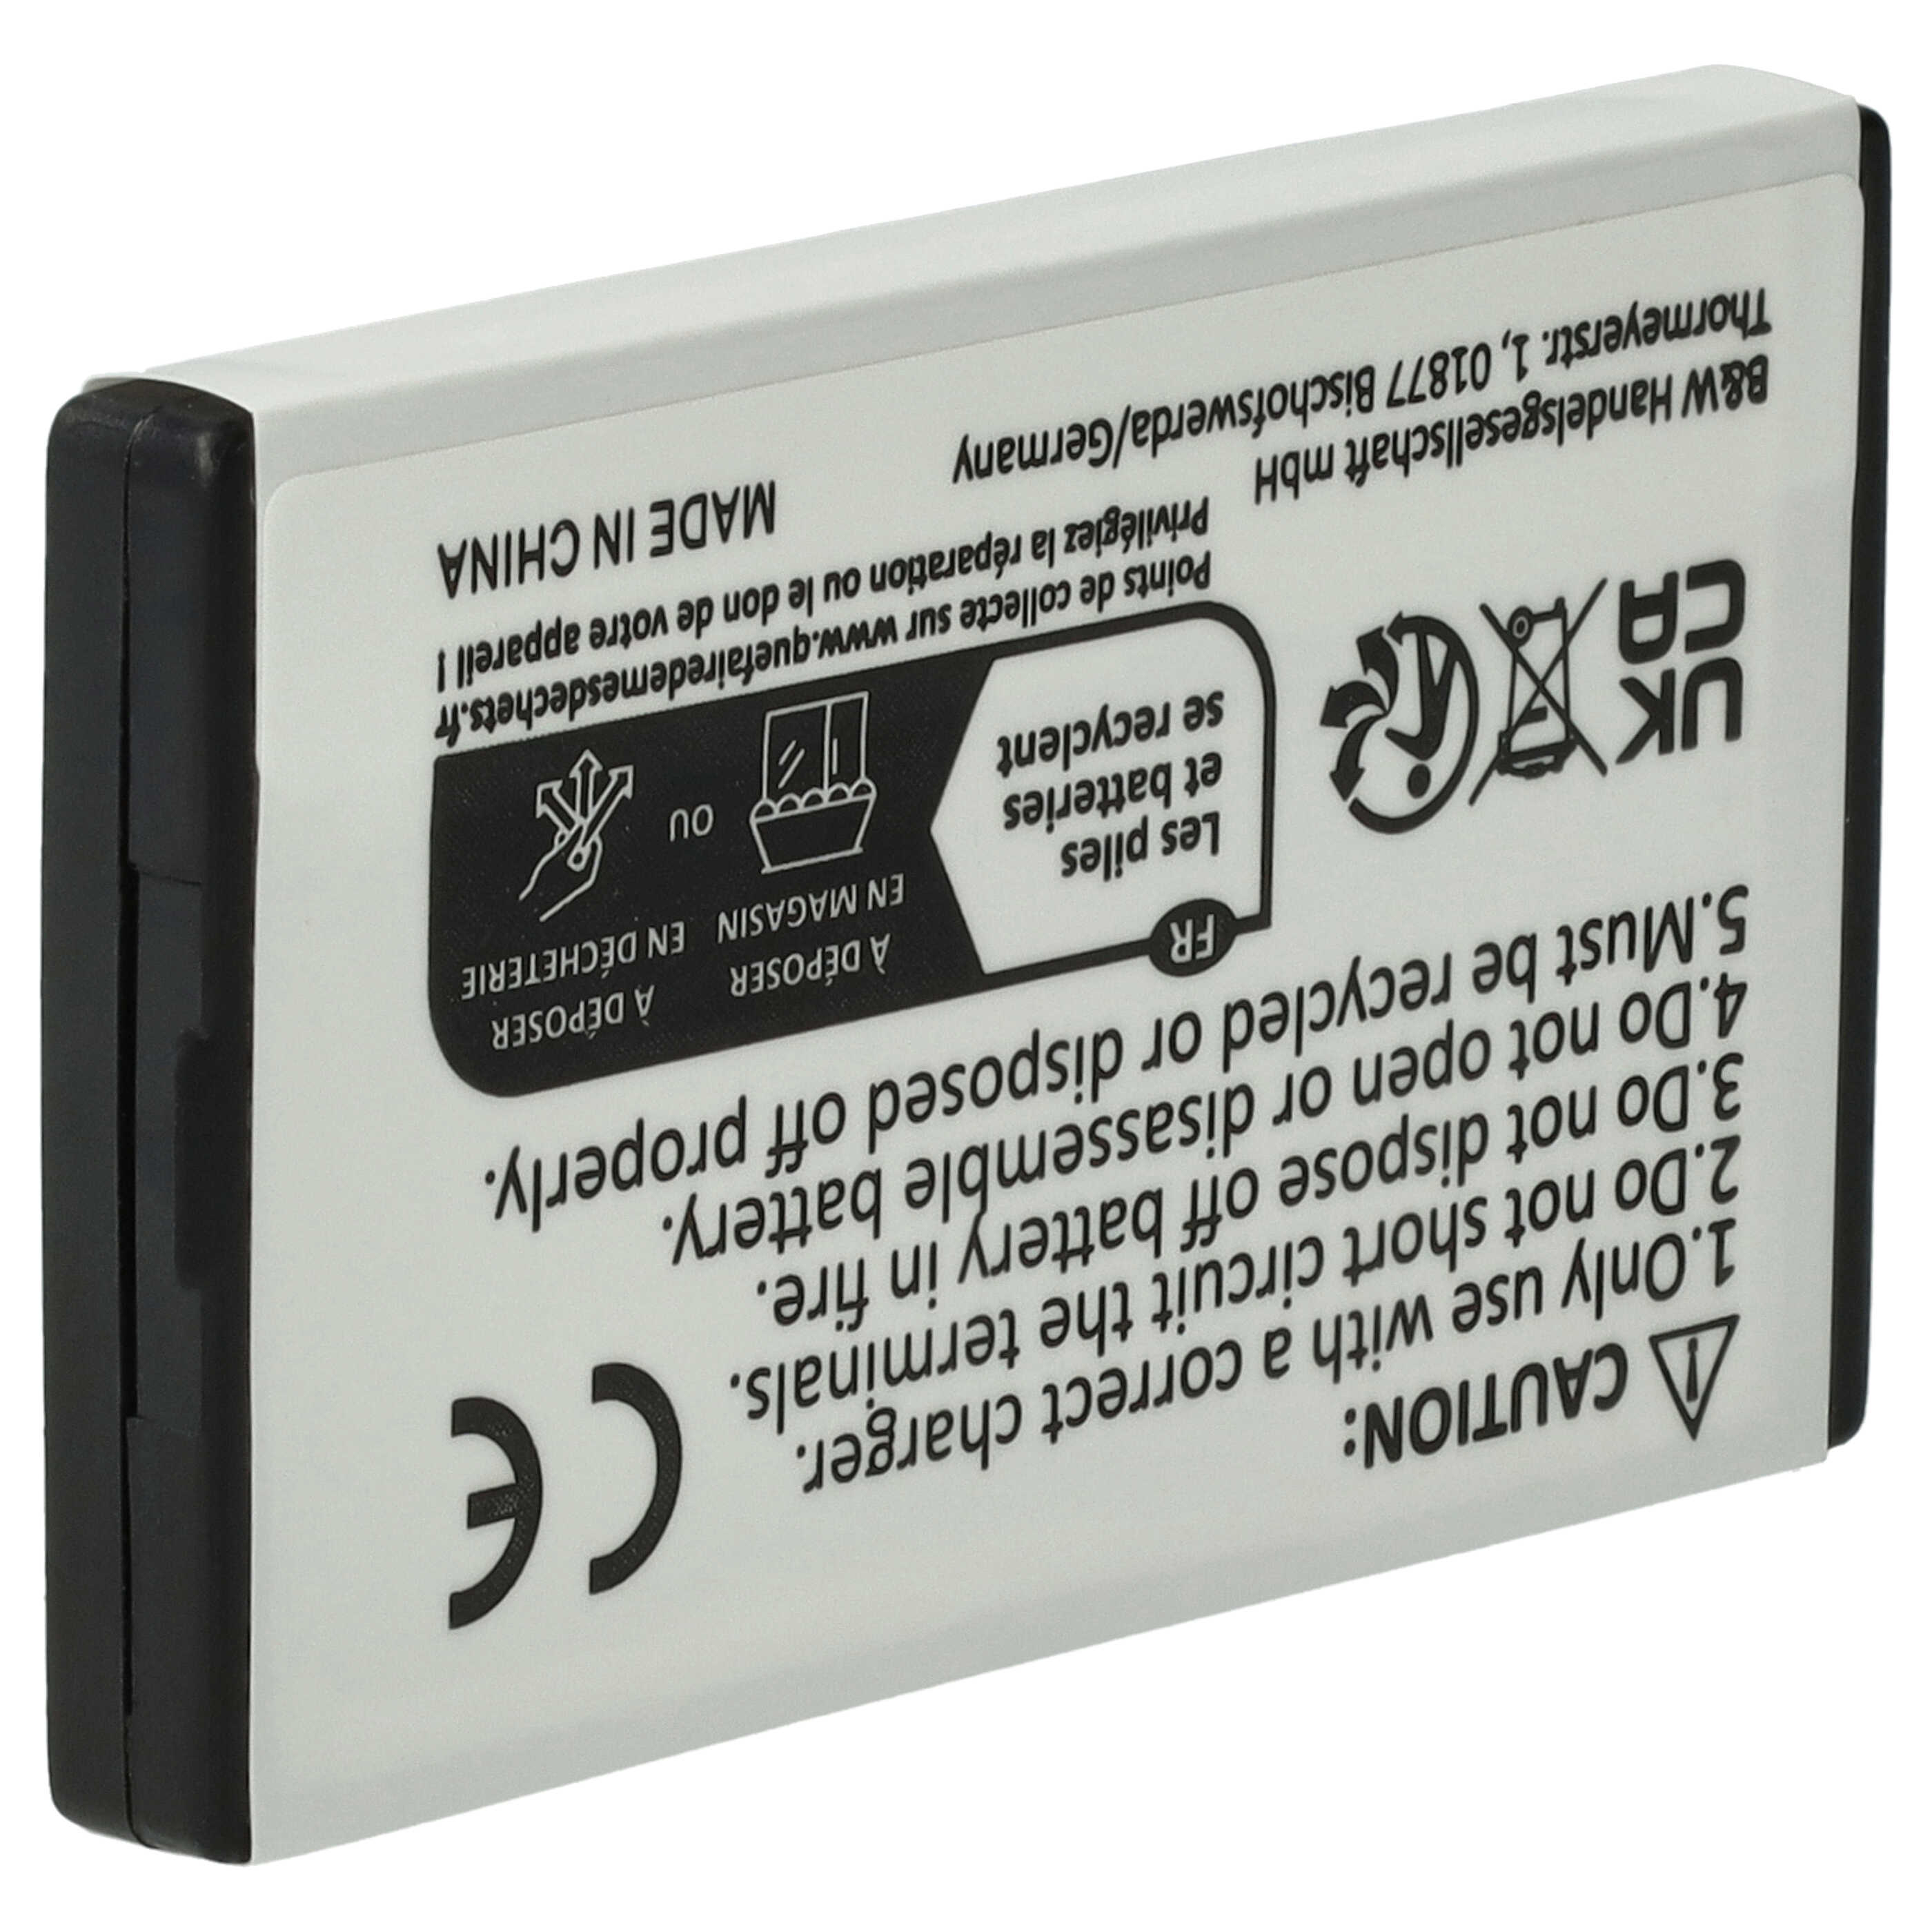 Akumulator do konsoli Nintendo zamiennik Nintendo NTR-003, NTR-001 - 800 mAh, 3,7 V